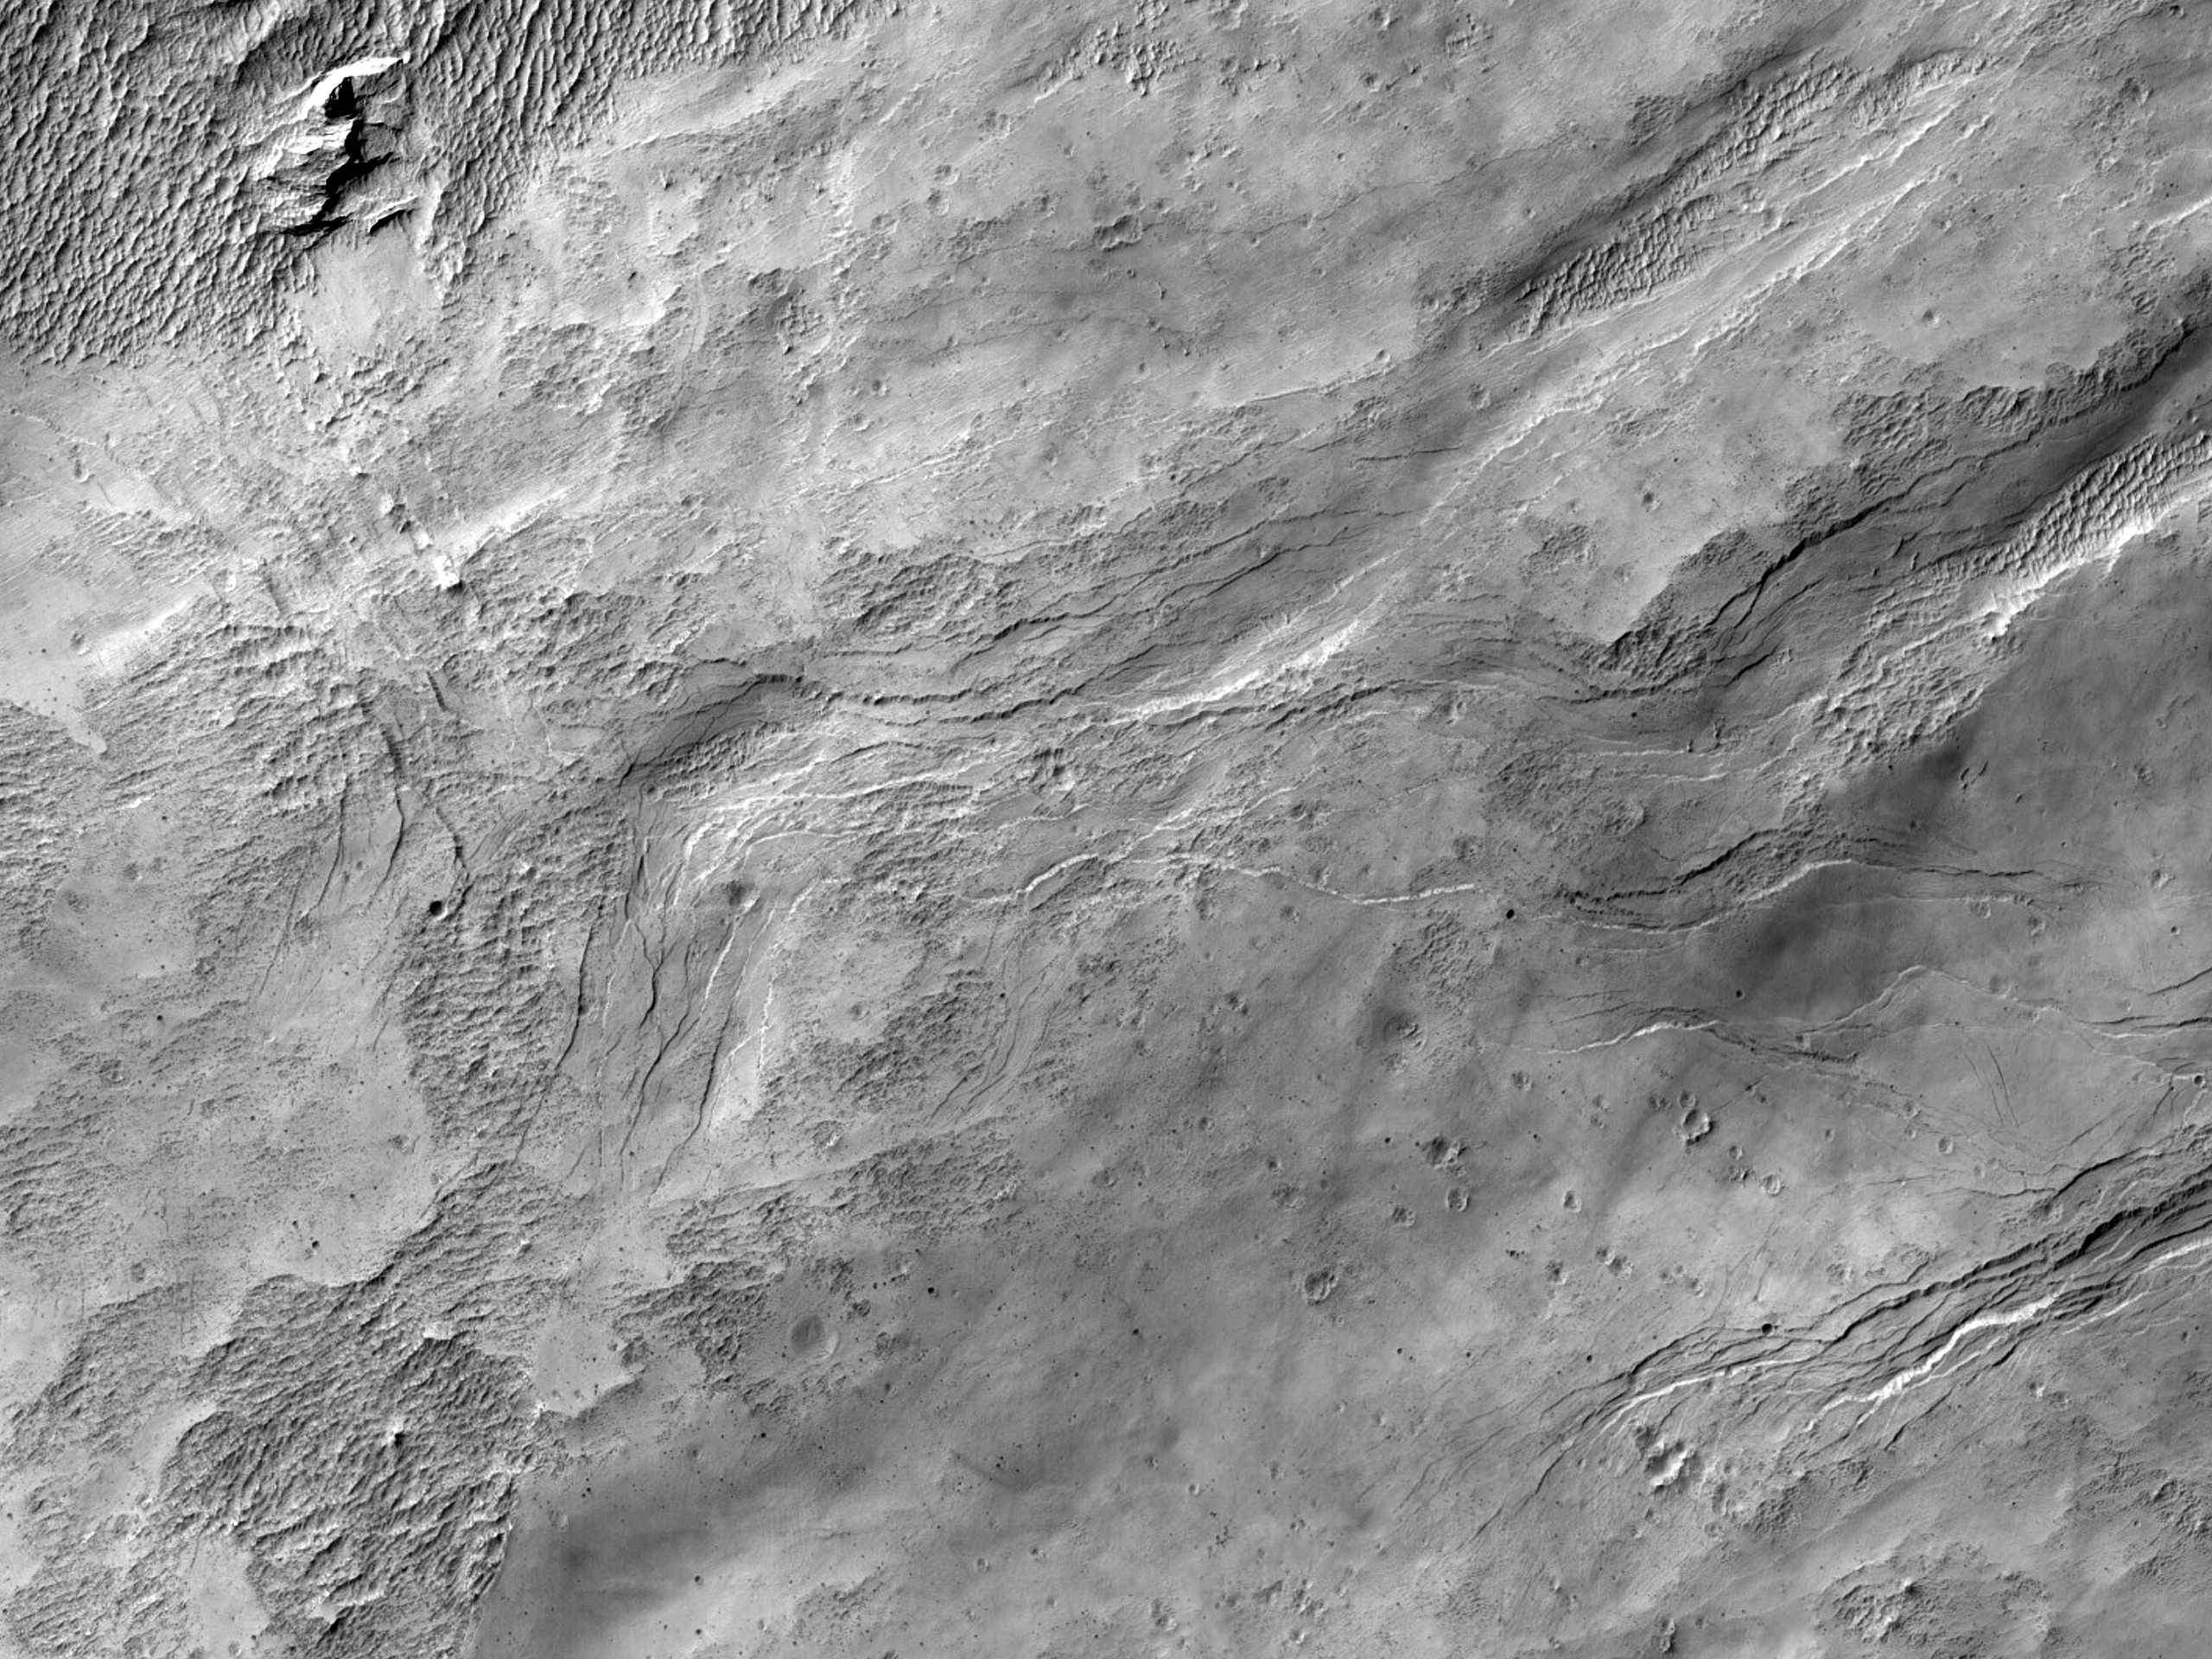 Faŭlta kaj plurtavola roko en kratero oriente de Schiaparelli Kratero